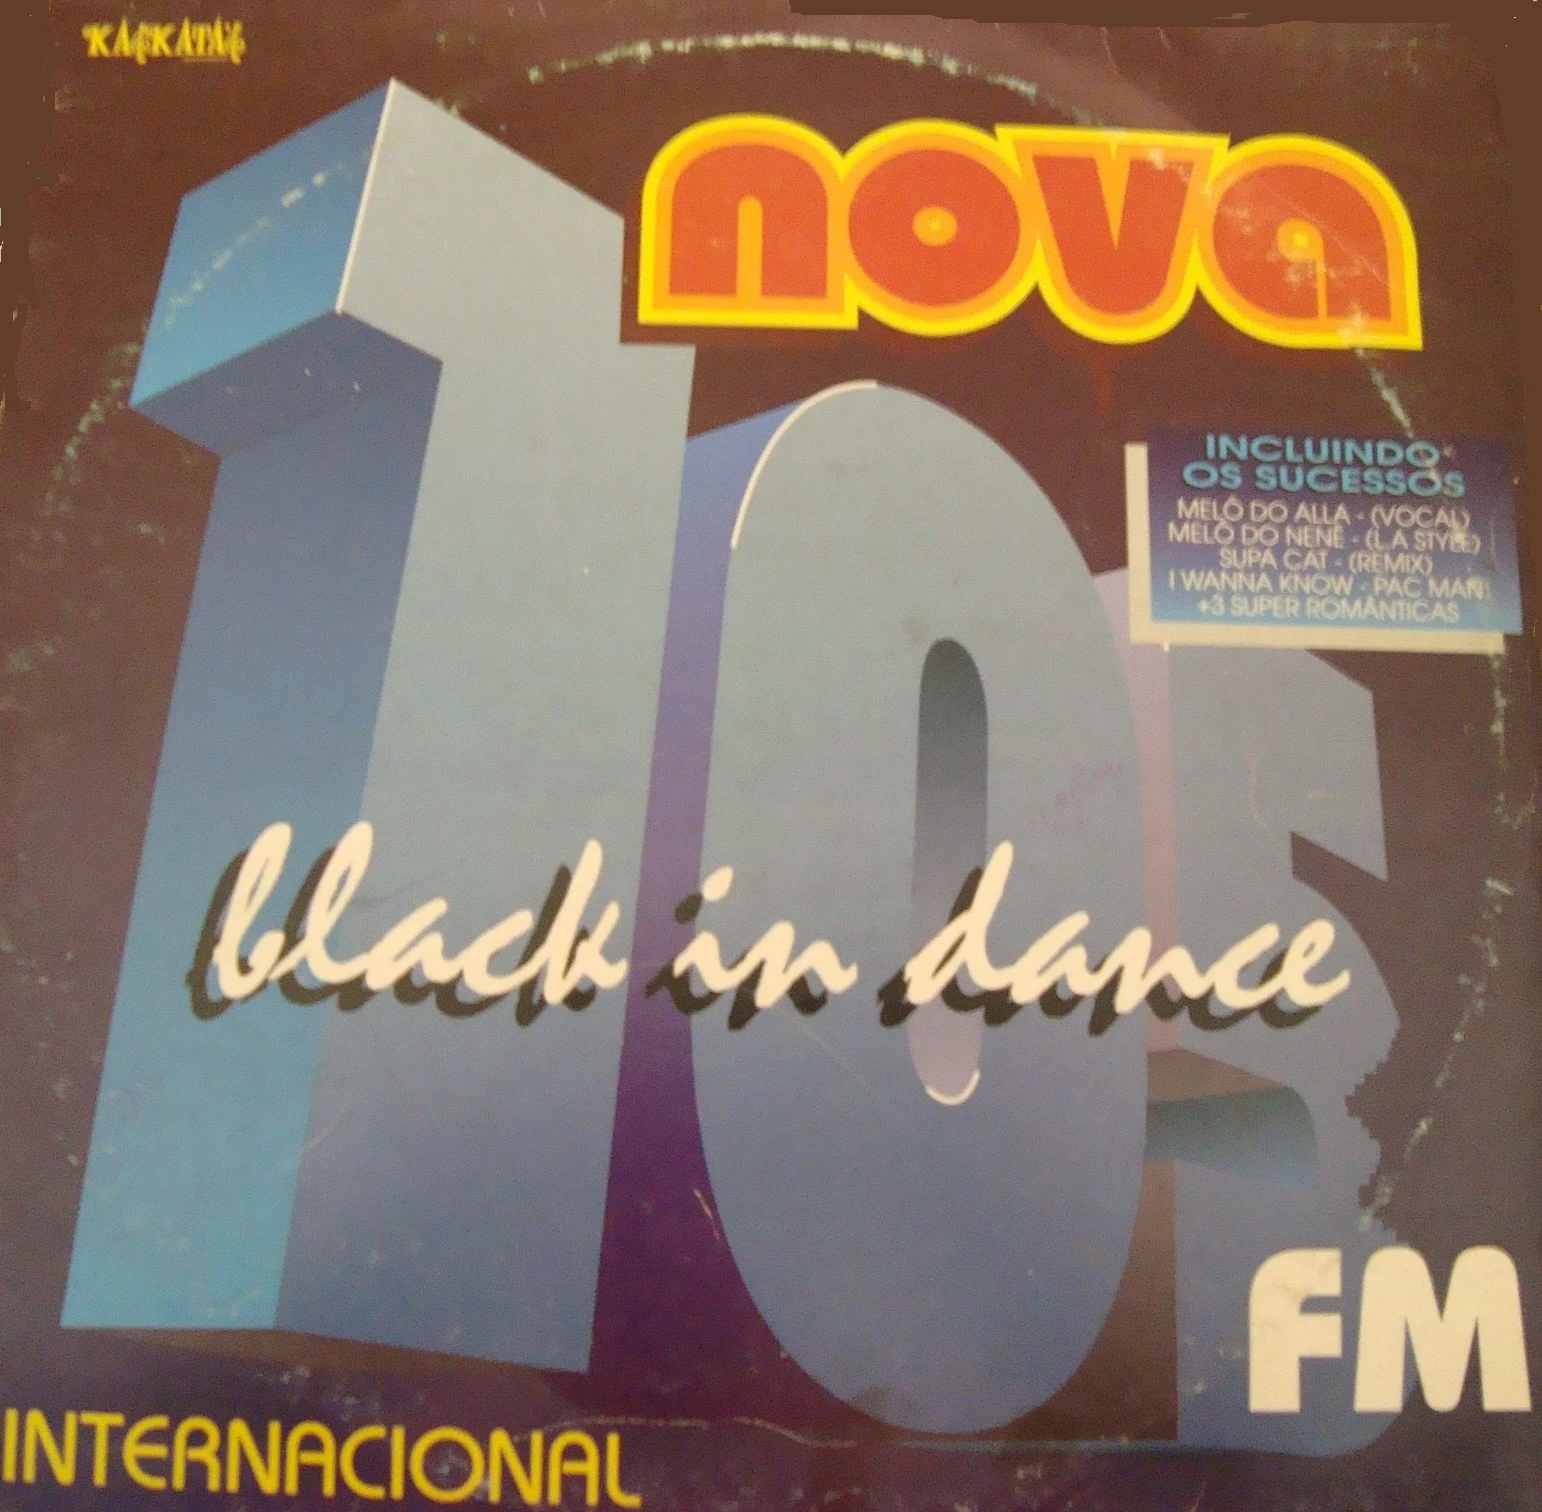 LP Nova 105 FM Black In Dance - Kaskatas Records